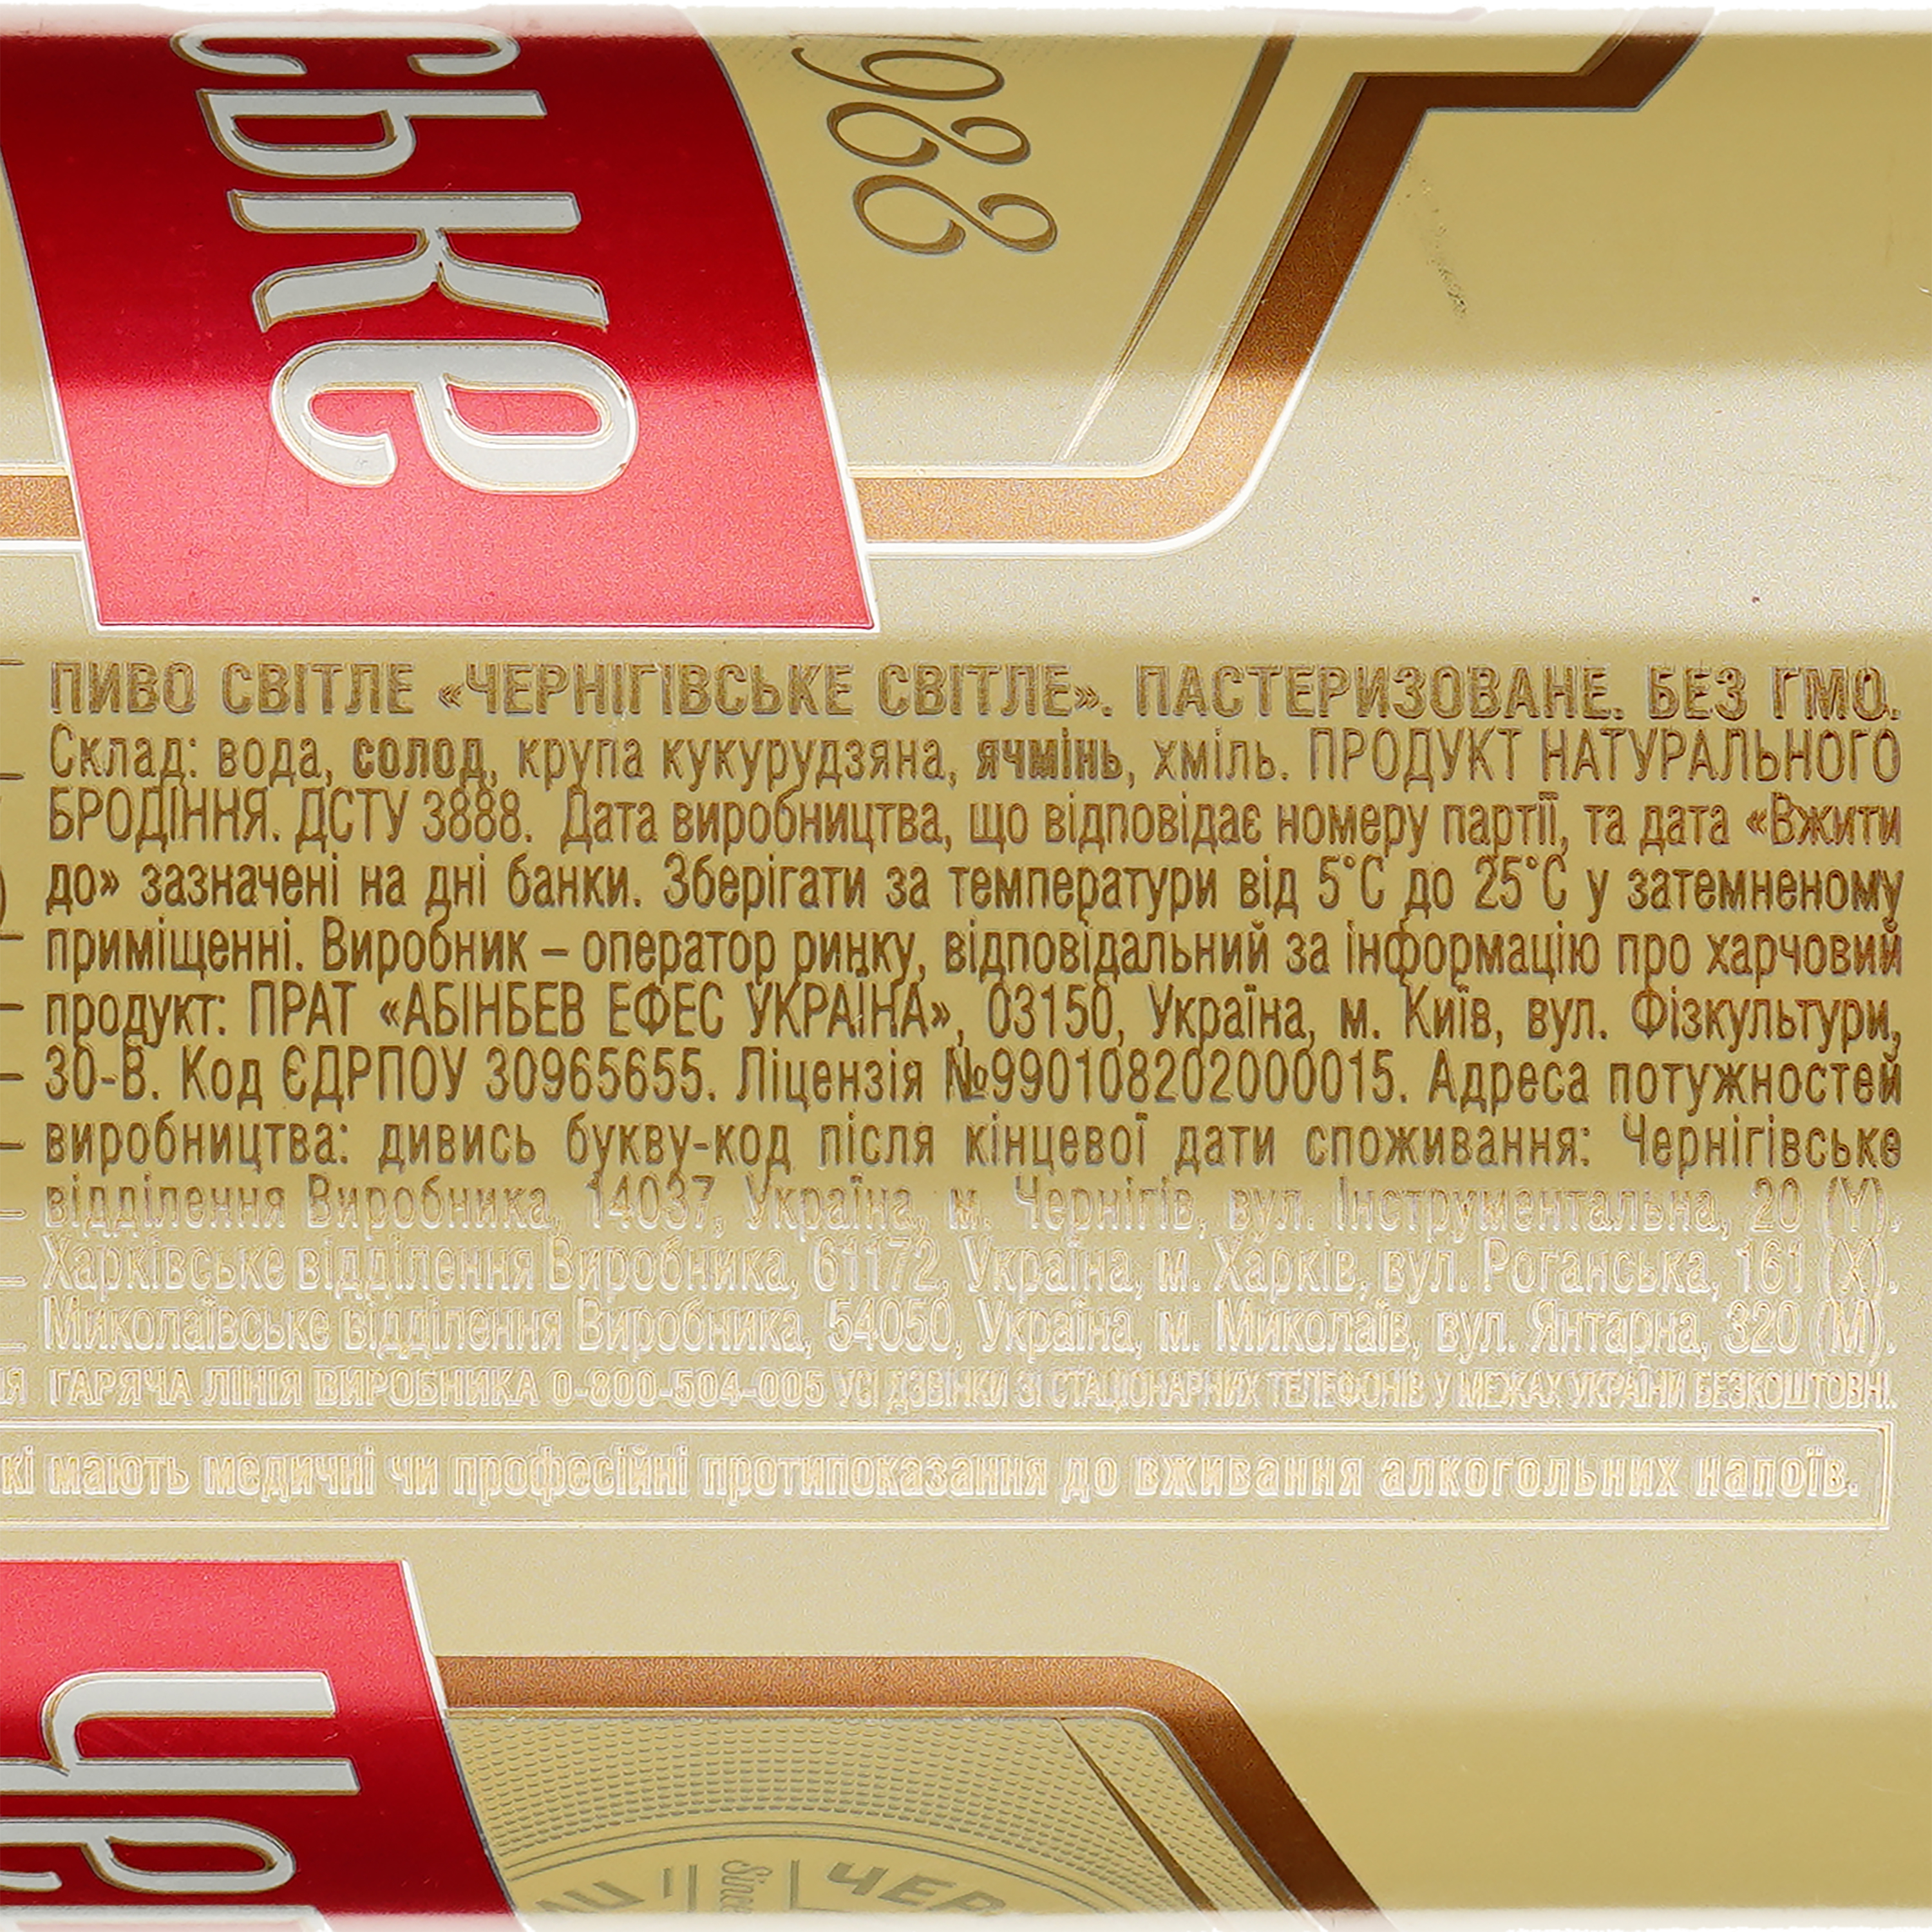 Пиво Чернігівське, светлое, 4,8%, ж/б, 0,5 л (243971) - фото 3